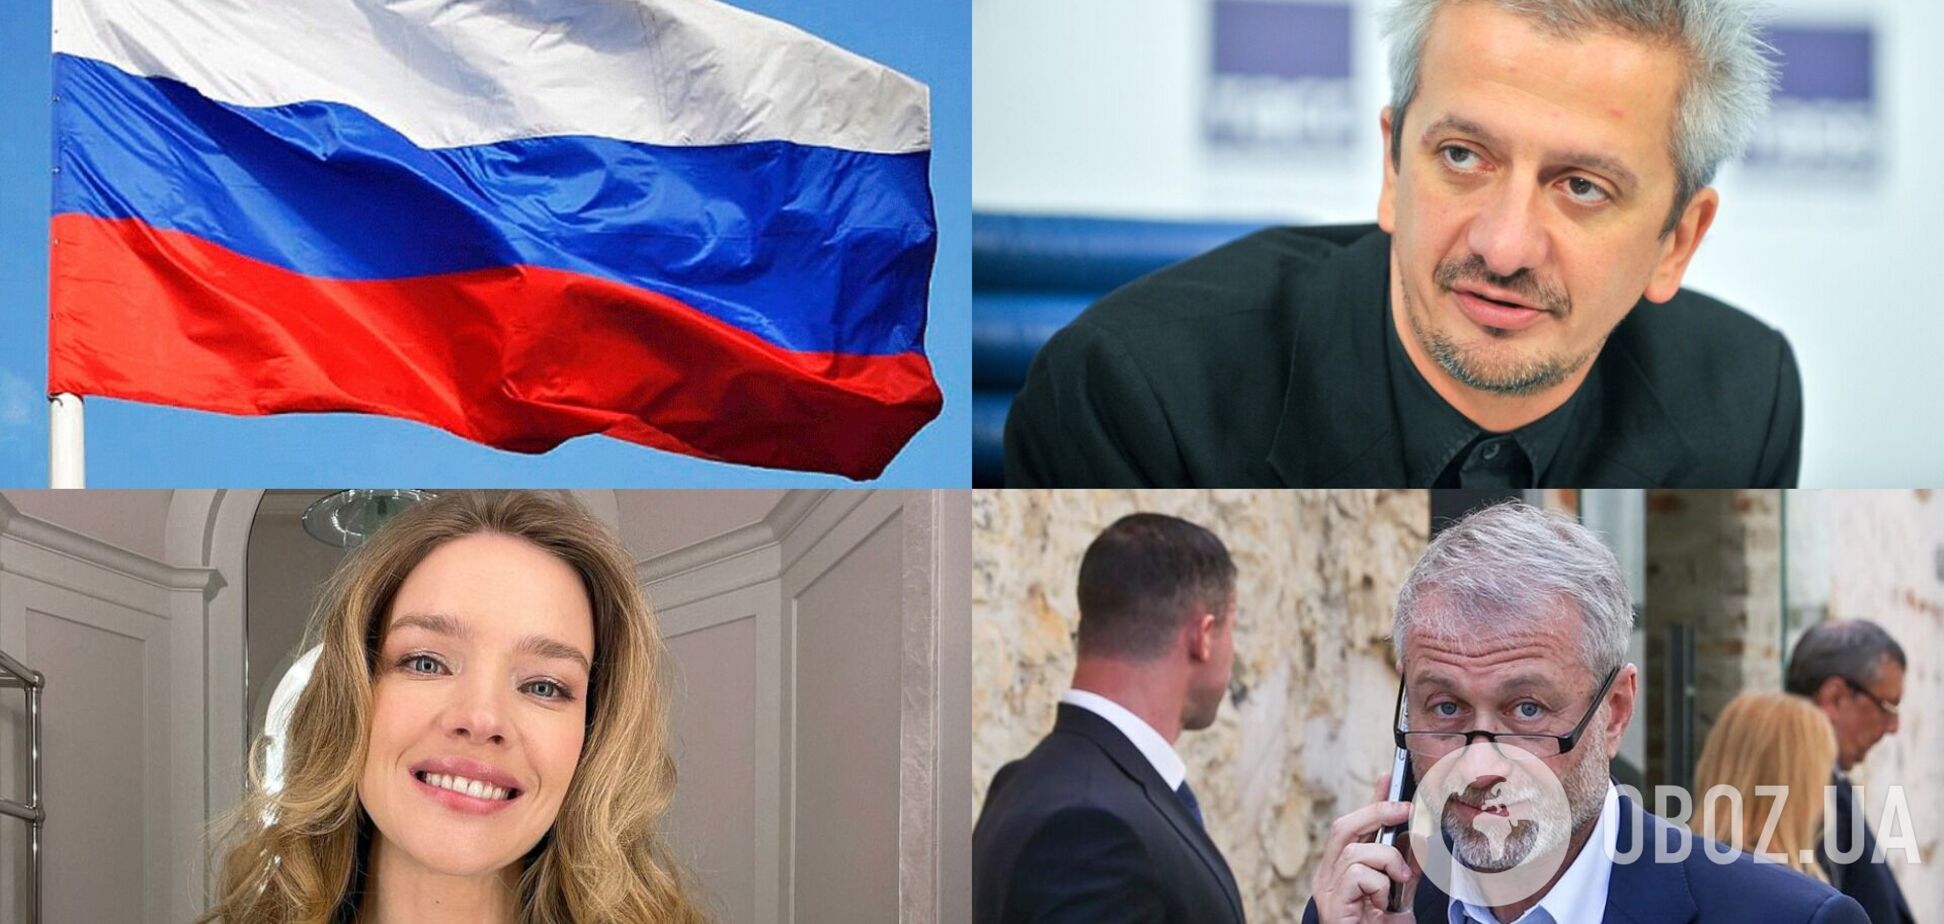 В России опозорились, анонсировав на мероприятии присутствие Абрамовича, Водяновой и Богомолова, которые об этом не знали